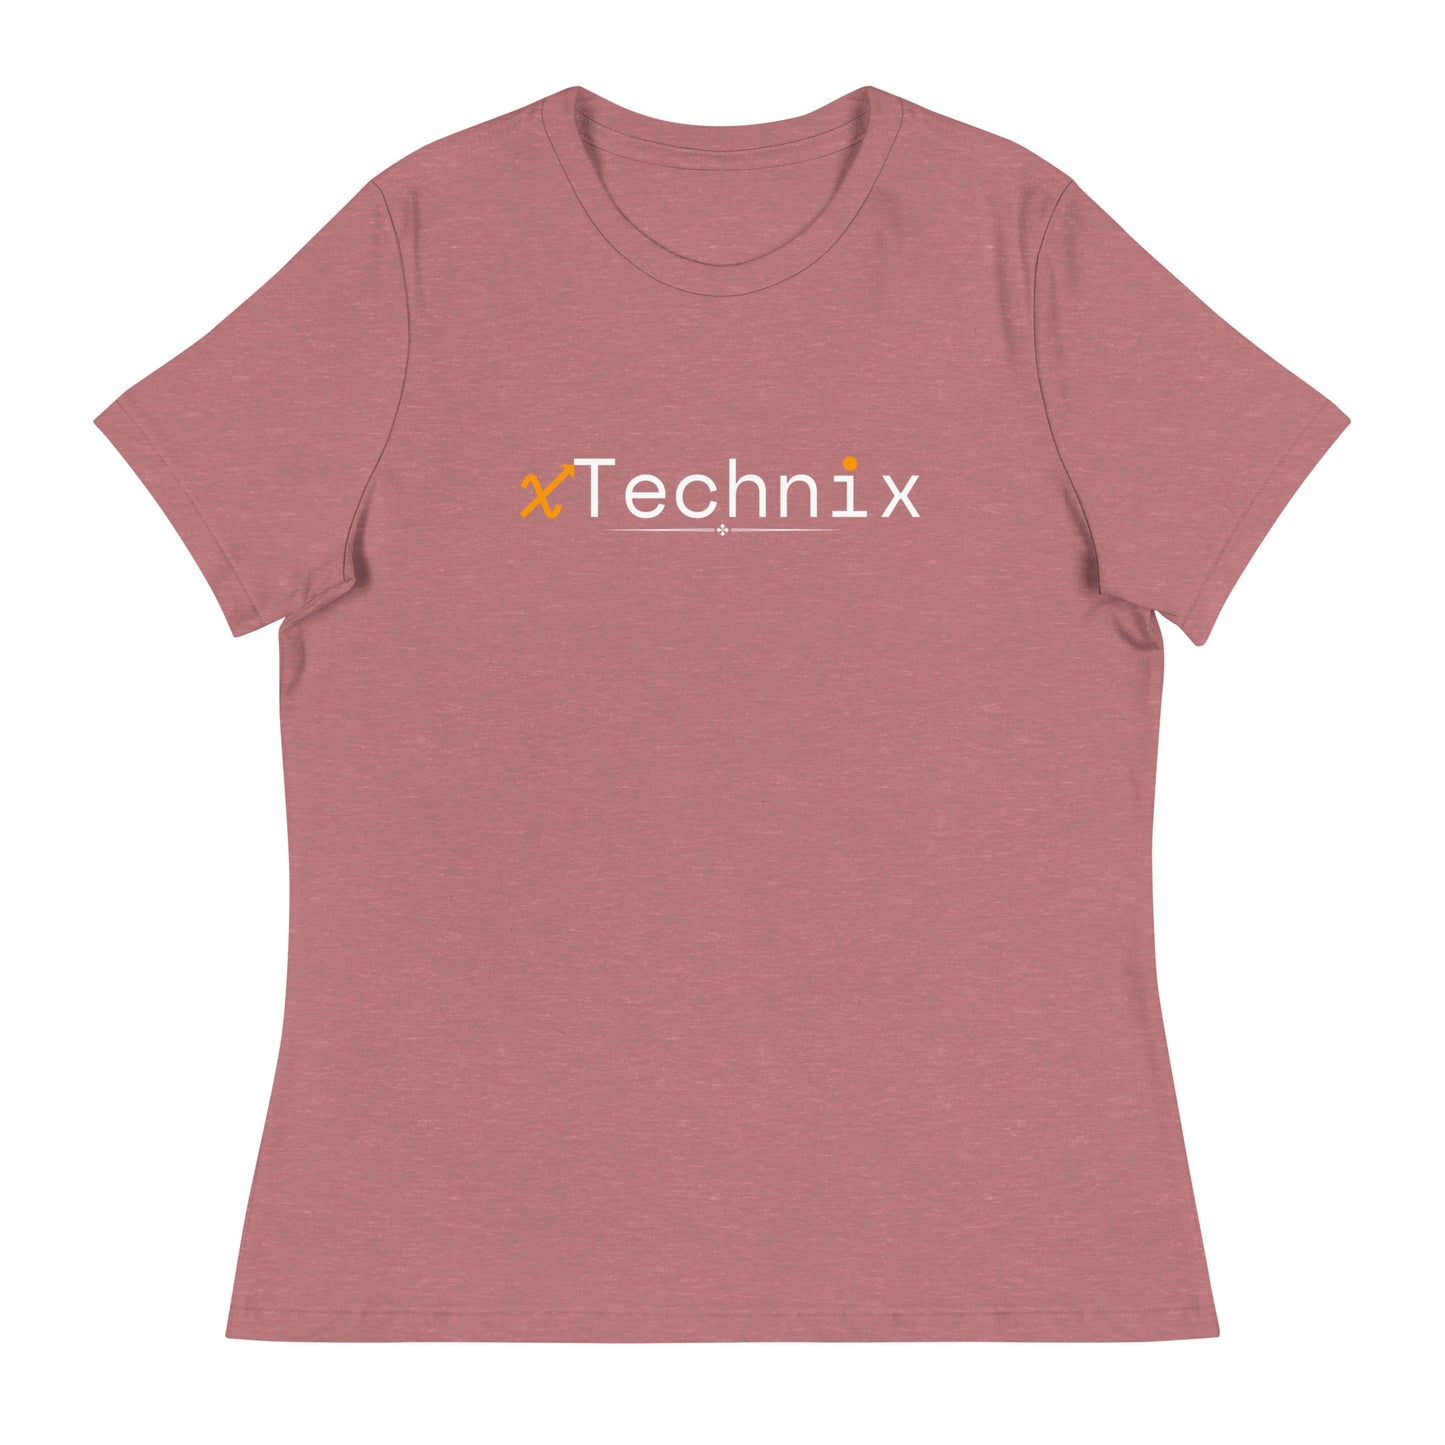 xTechhix Women's Relaxed T-Shirt